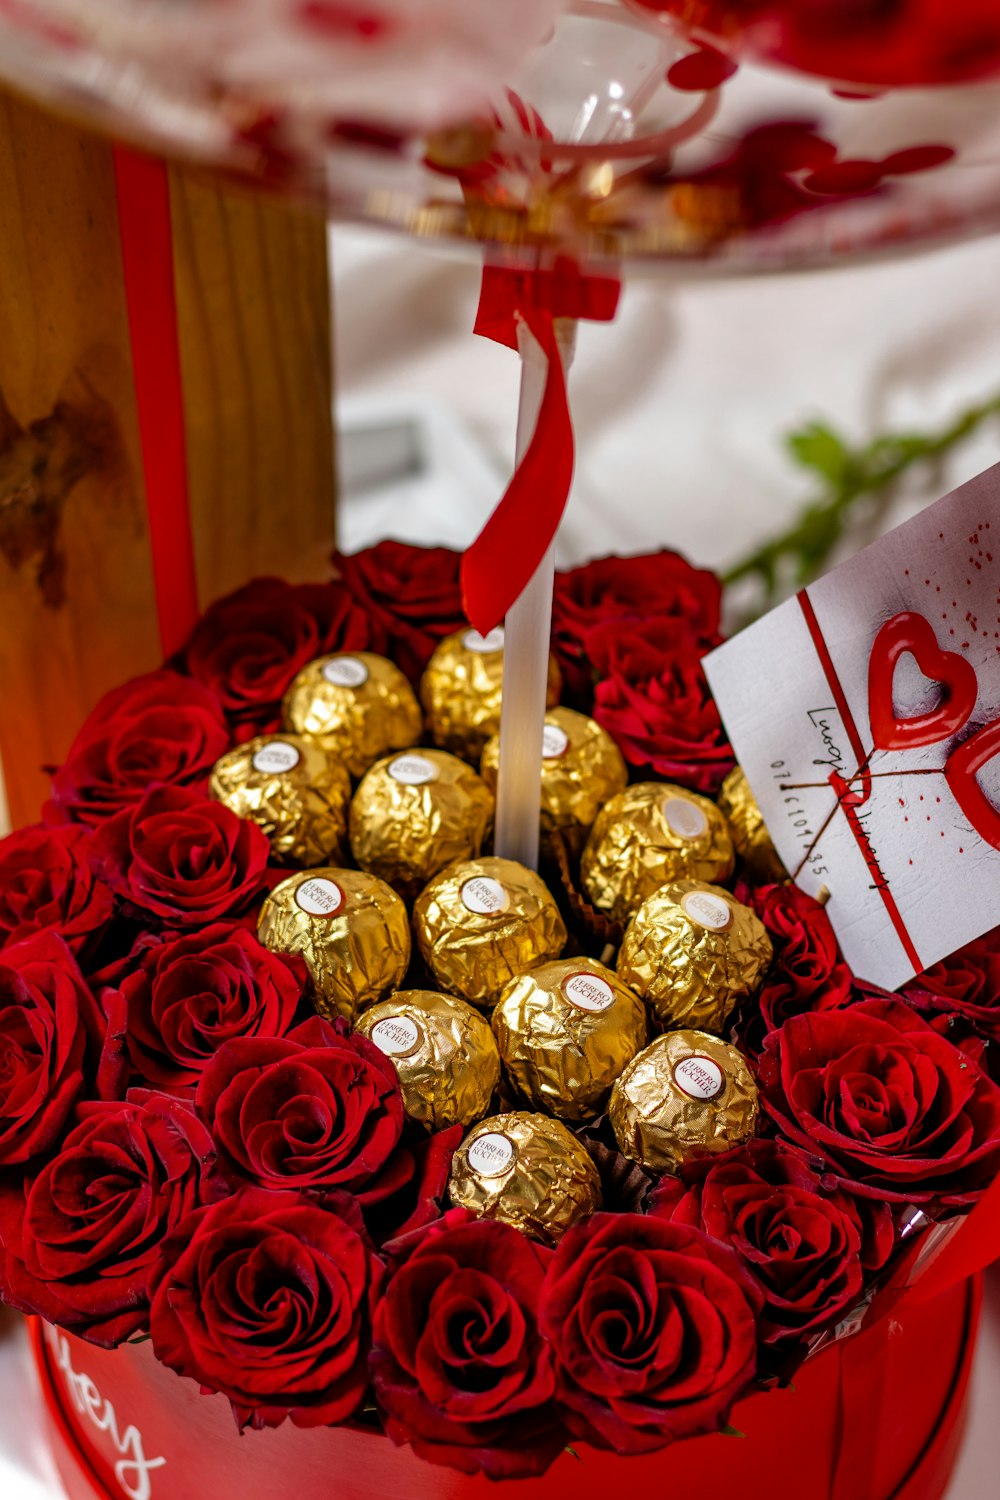 チョコレートとバラが入ったハート型の箱